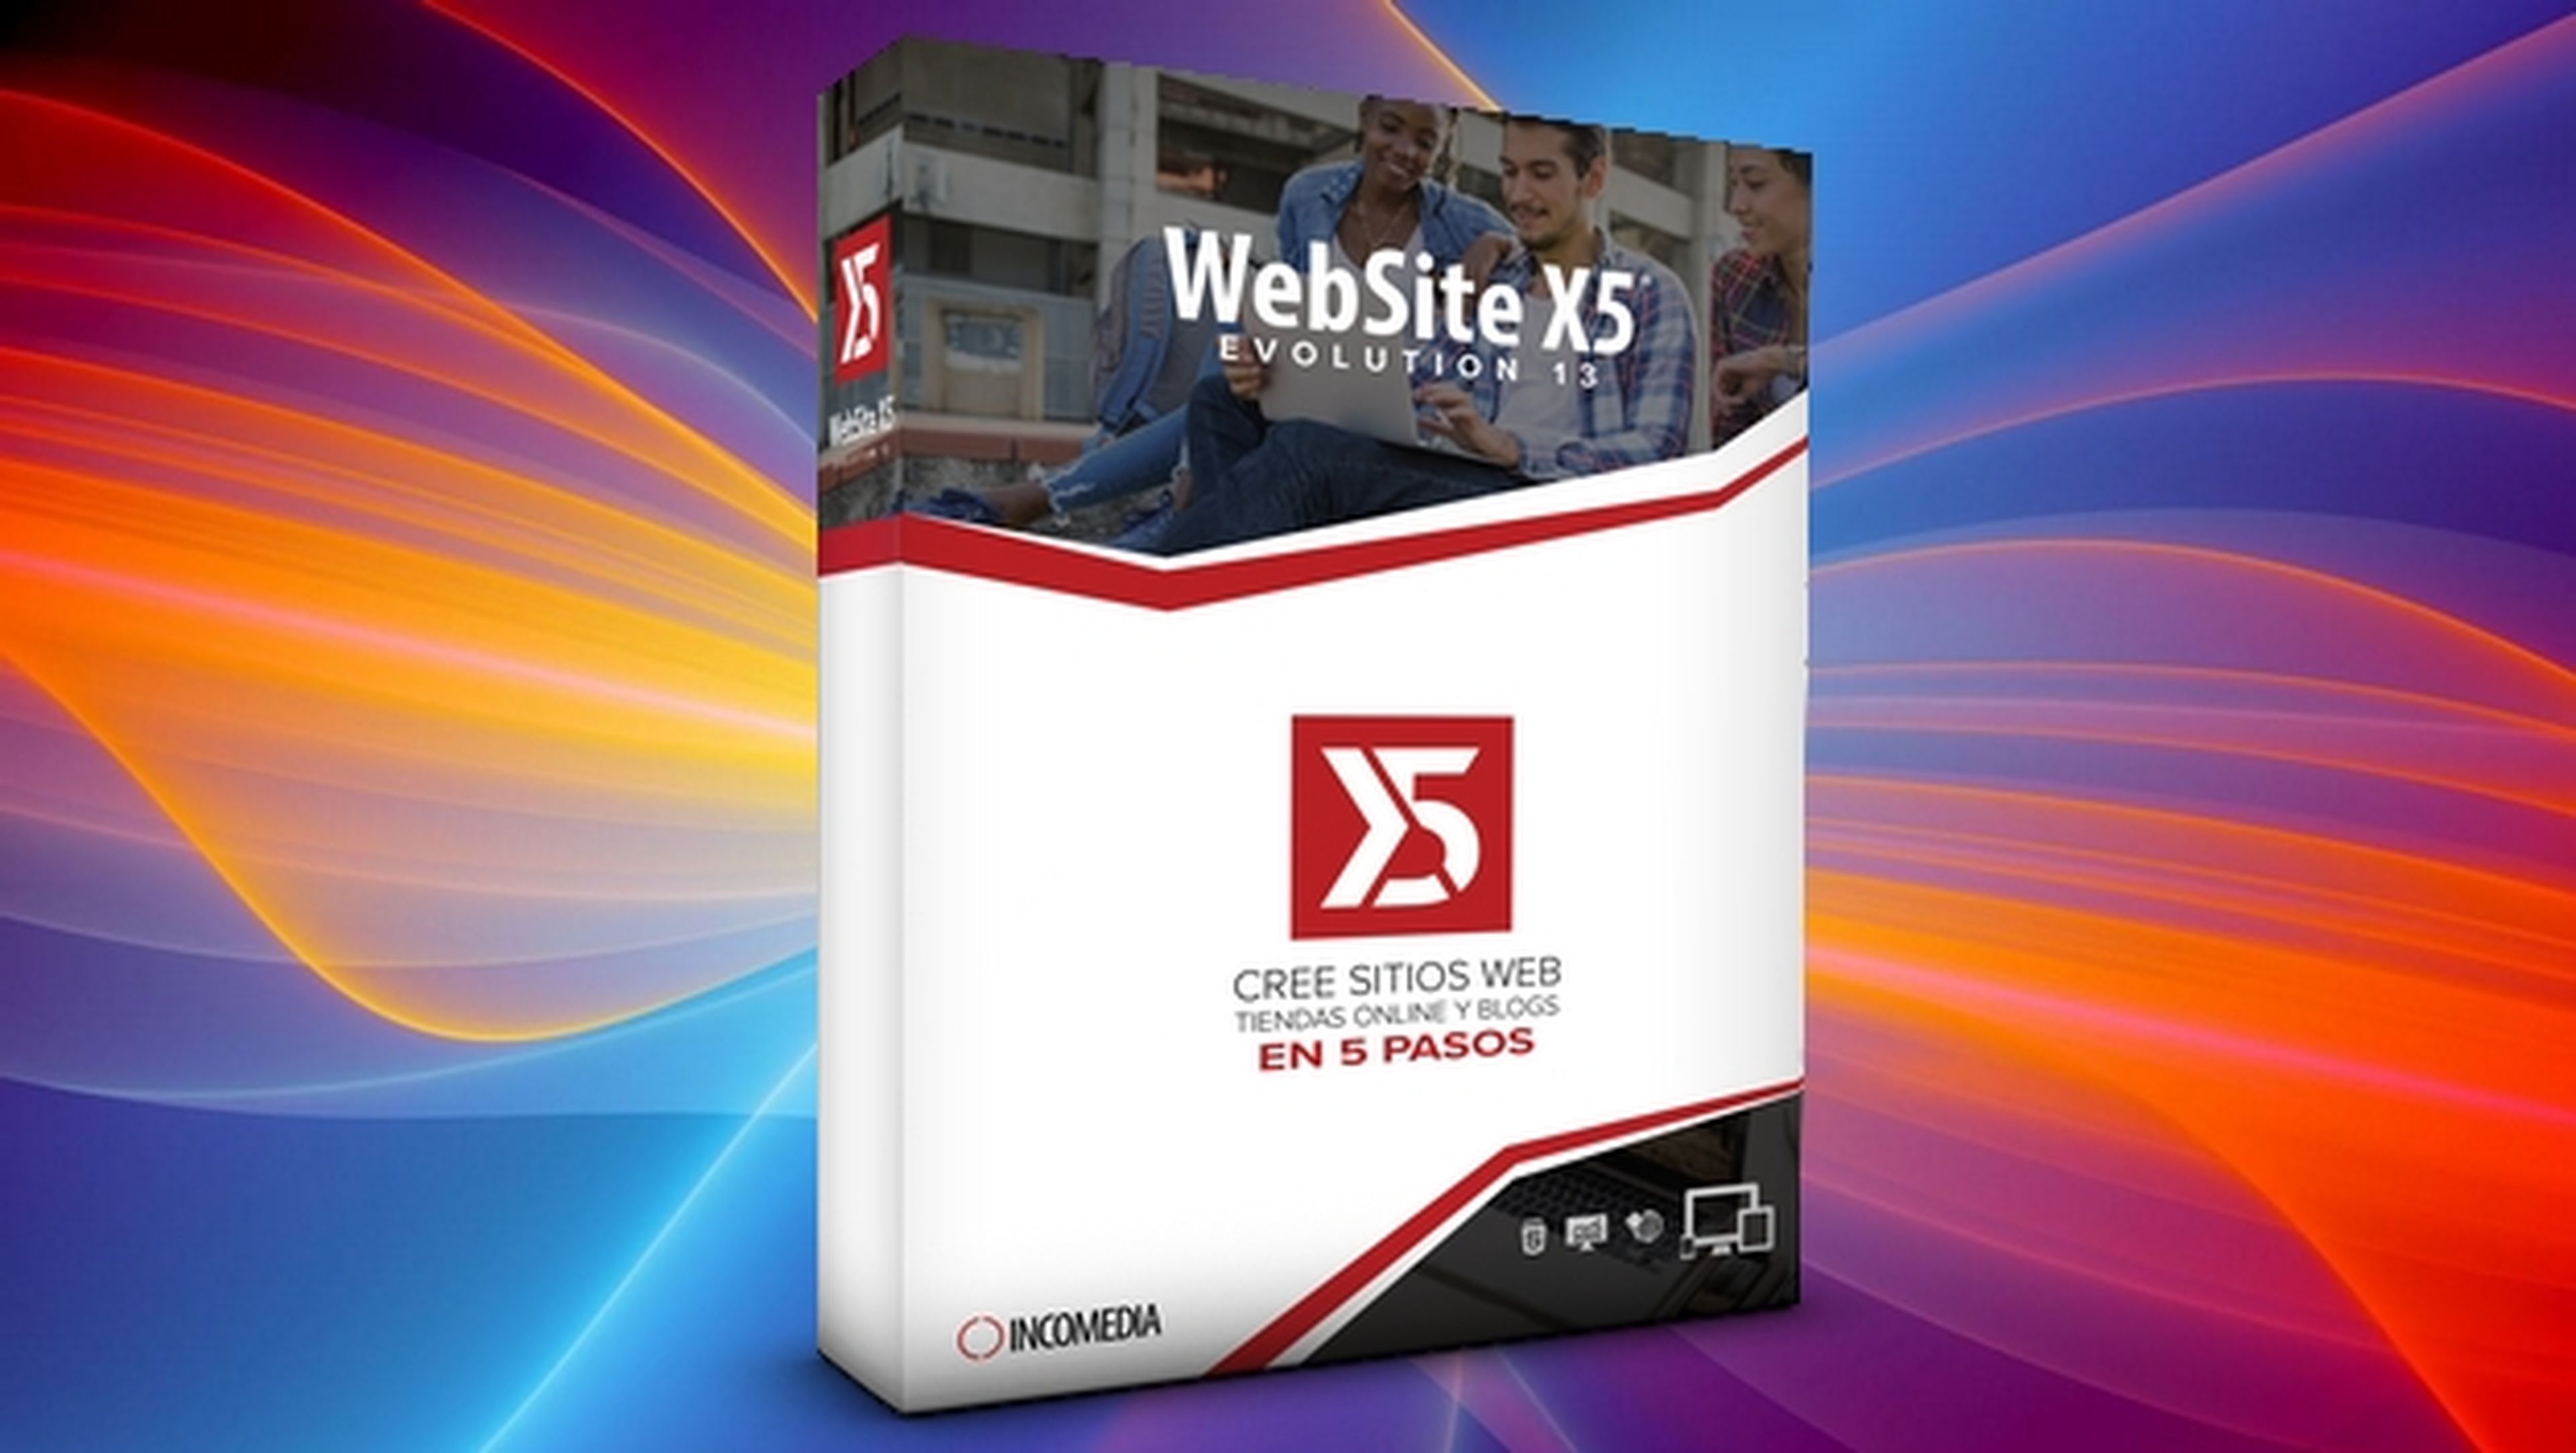 WebSite X5 Evolution 13, crea webs, blogs y tiendas en cinco pasos